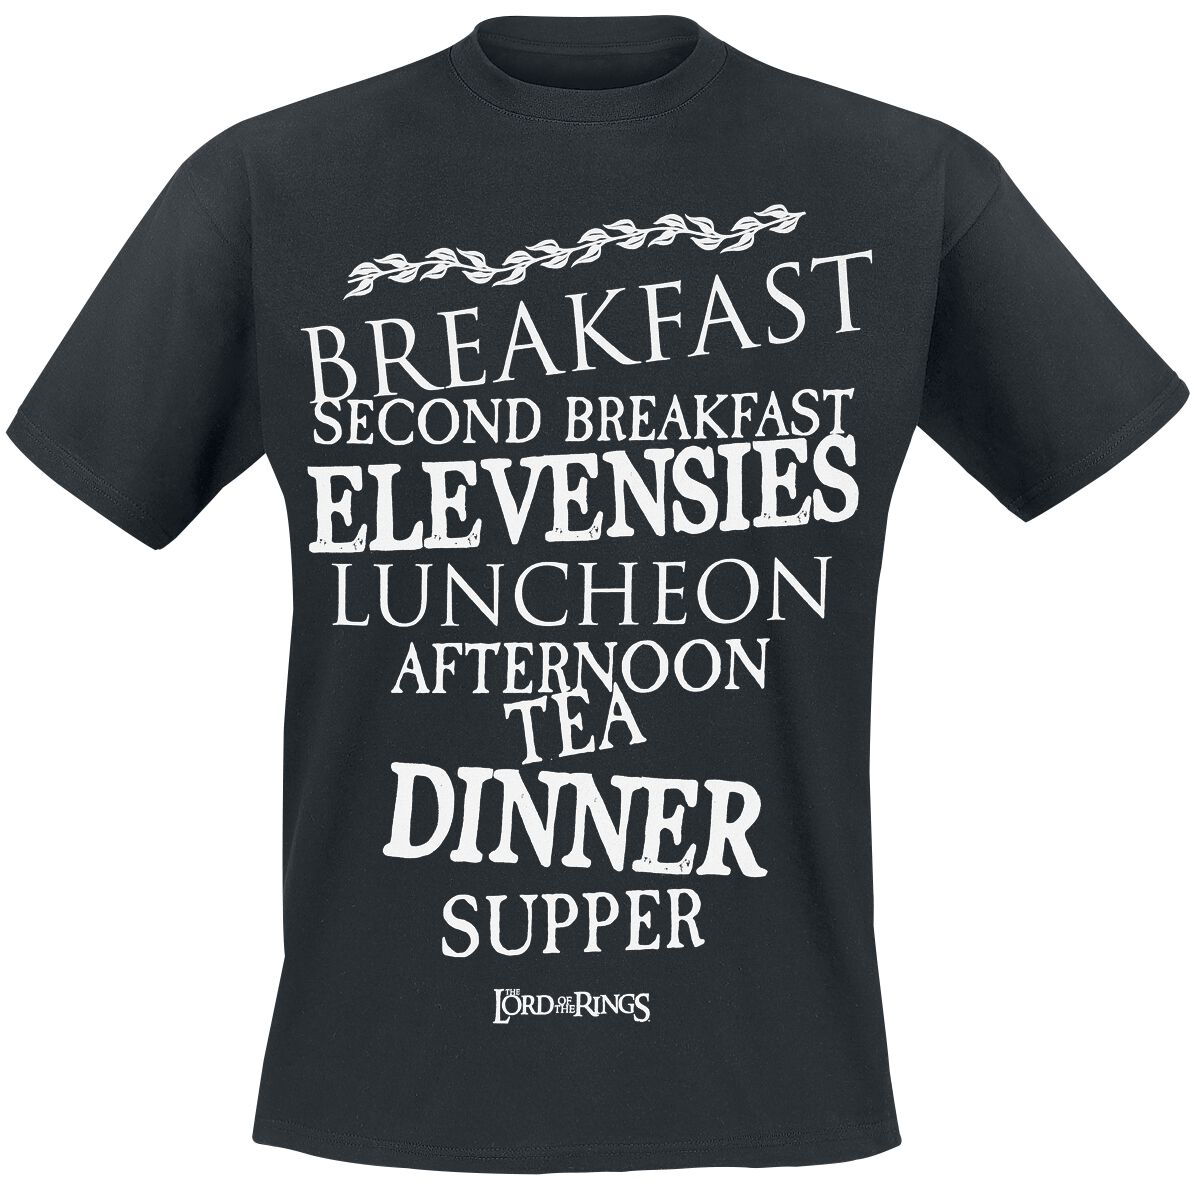 Der Herr der Ringe Hobbit Meals T-Shirt schwarz in XL